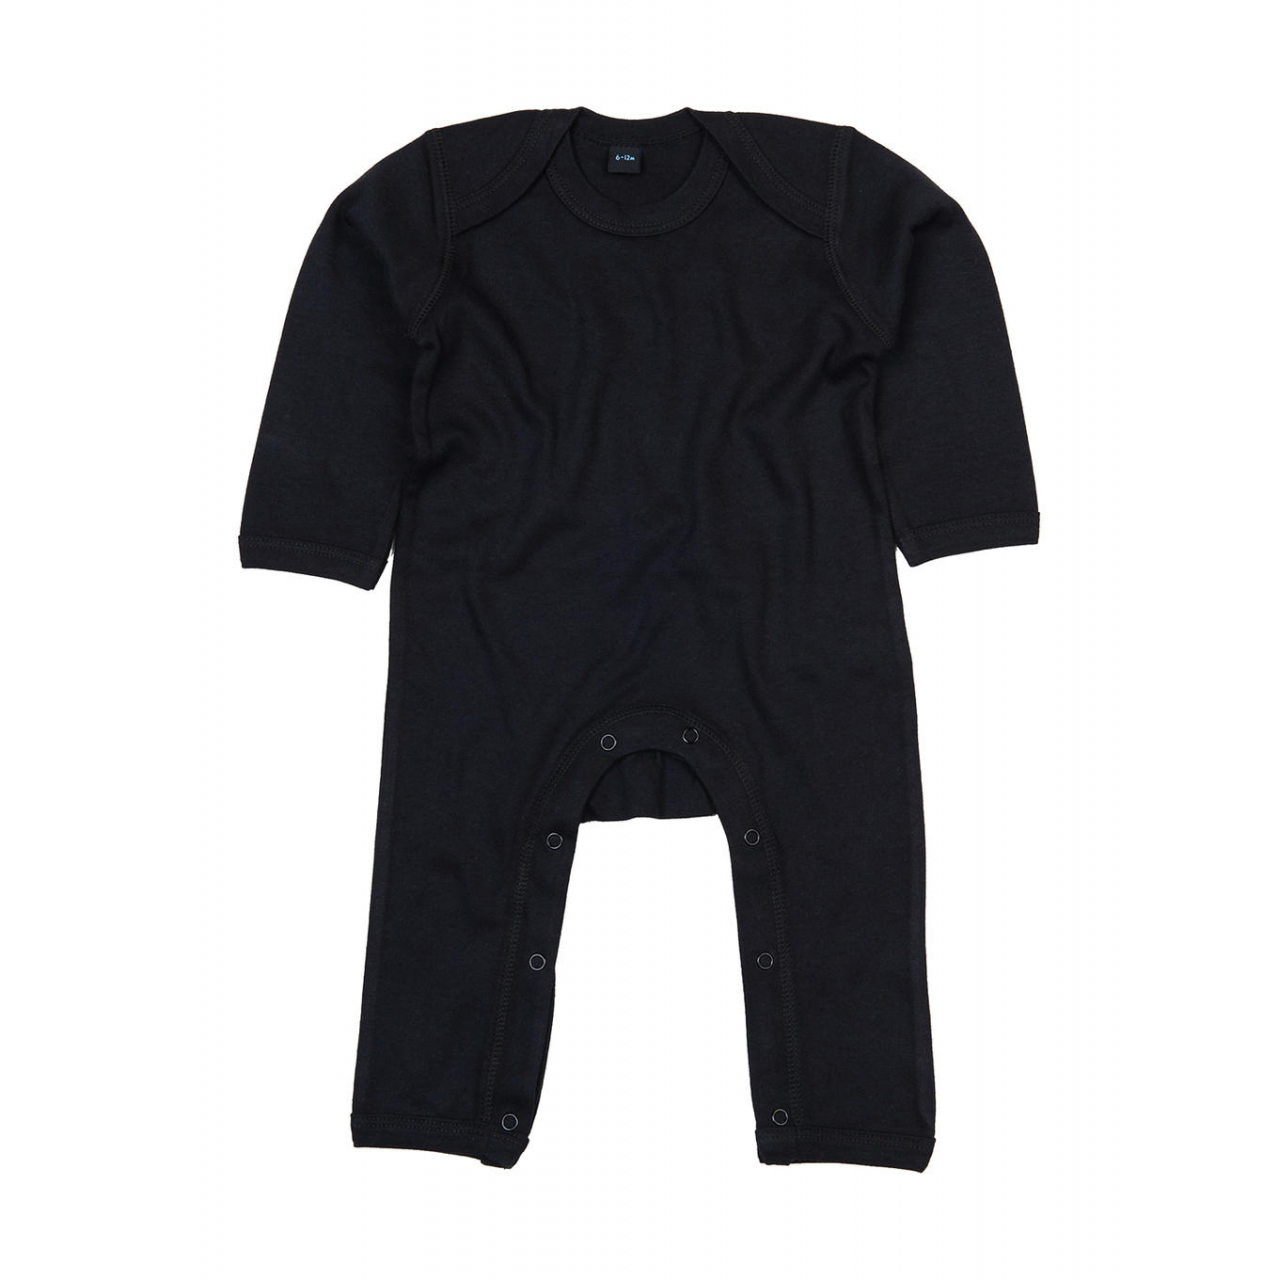 Dětské pyžamo Babybugz - černé, 6-12 měsíců